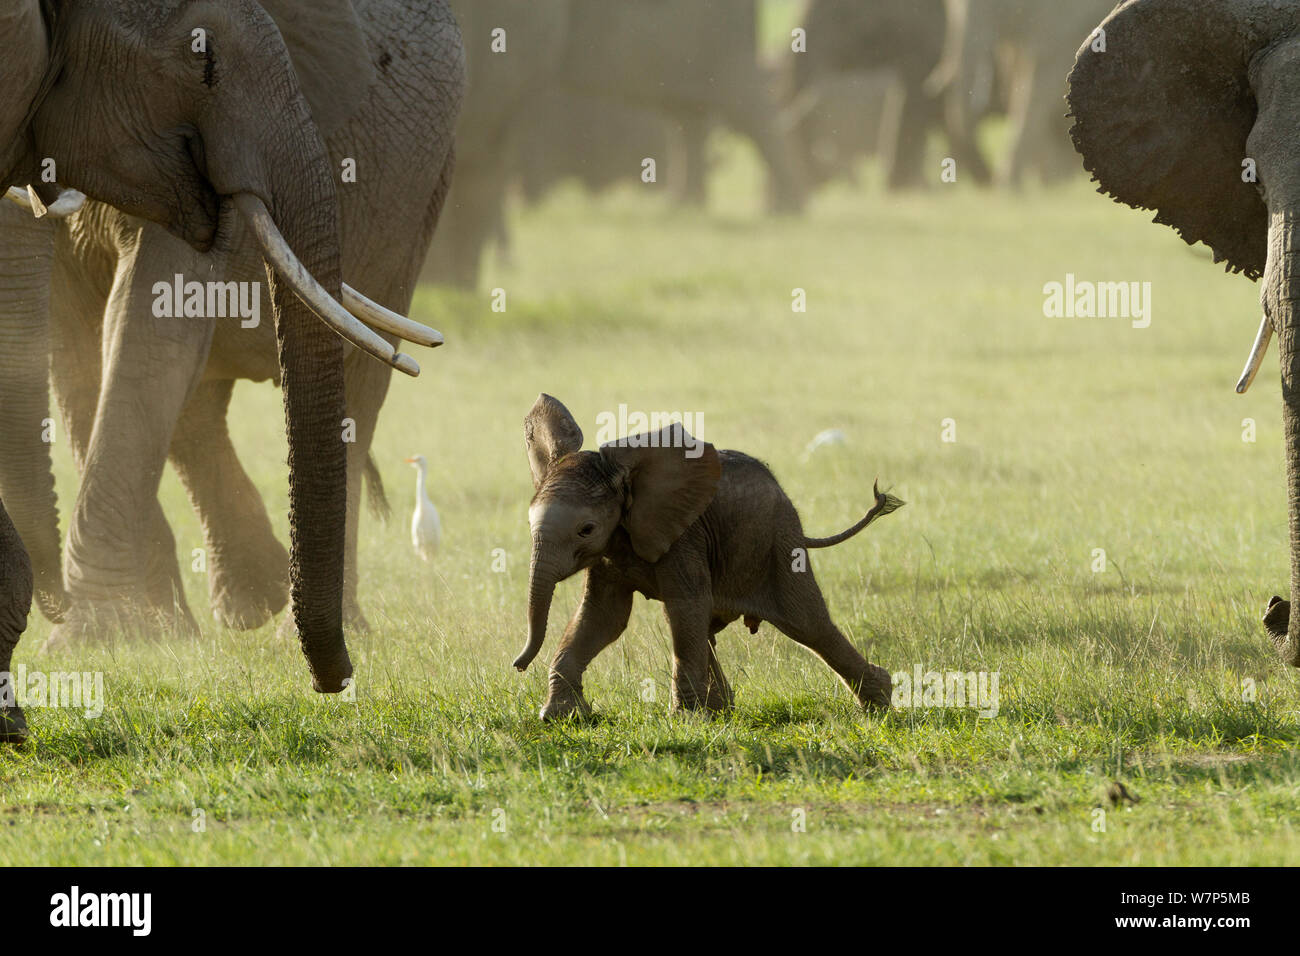 L'éléphant africain (Loxodonta africana) bébé parmi le troupeau. Le Parc national Amboseli, au Kenya. Banque D'Images